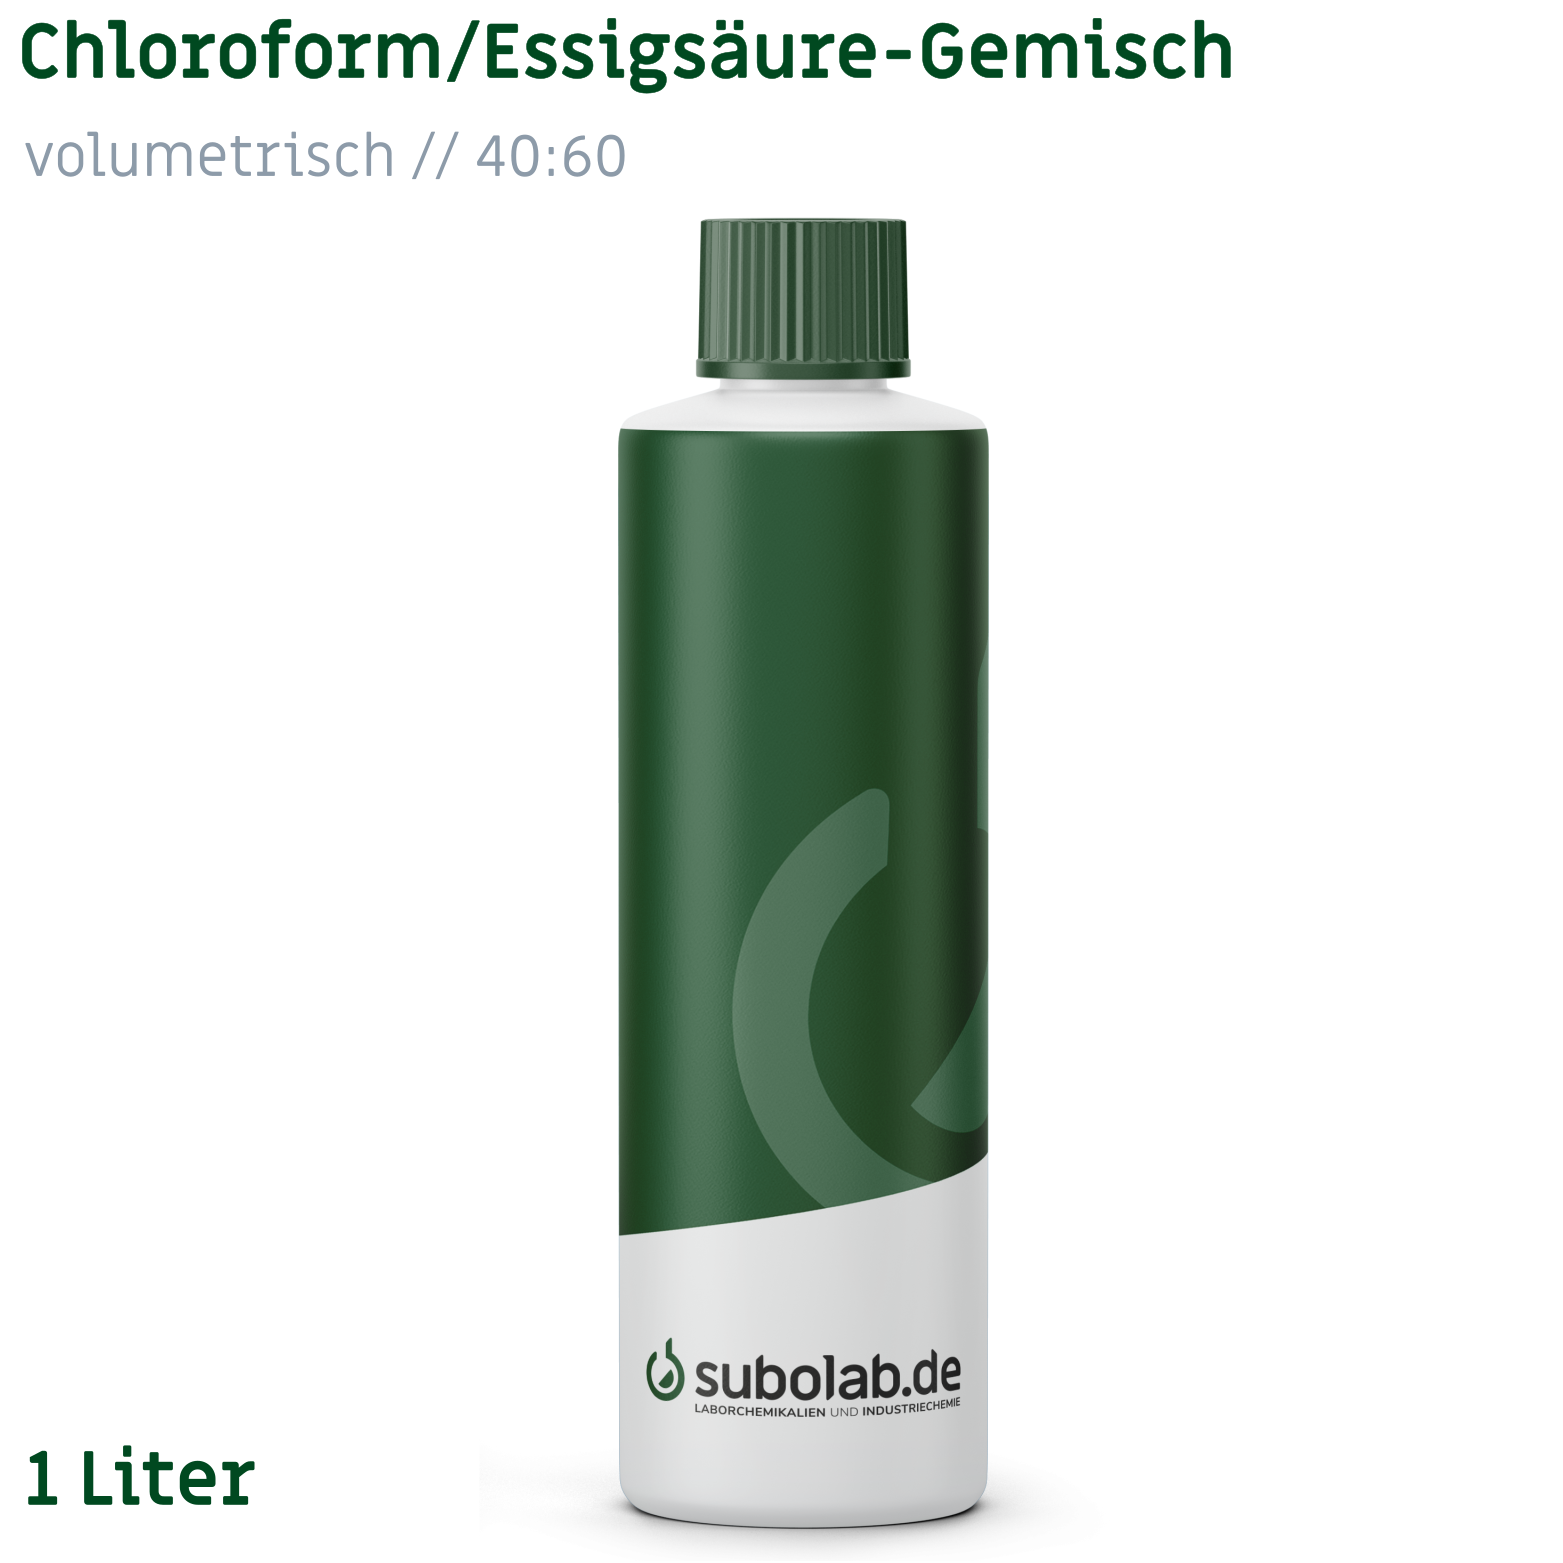 Bild von Chloroform / Essigsäure - Gemisch - volumetrisch - 40 : 60 (1 Liter)